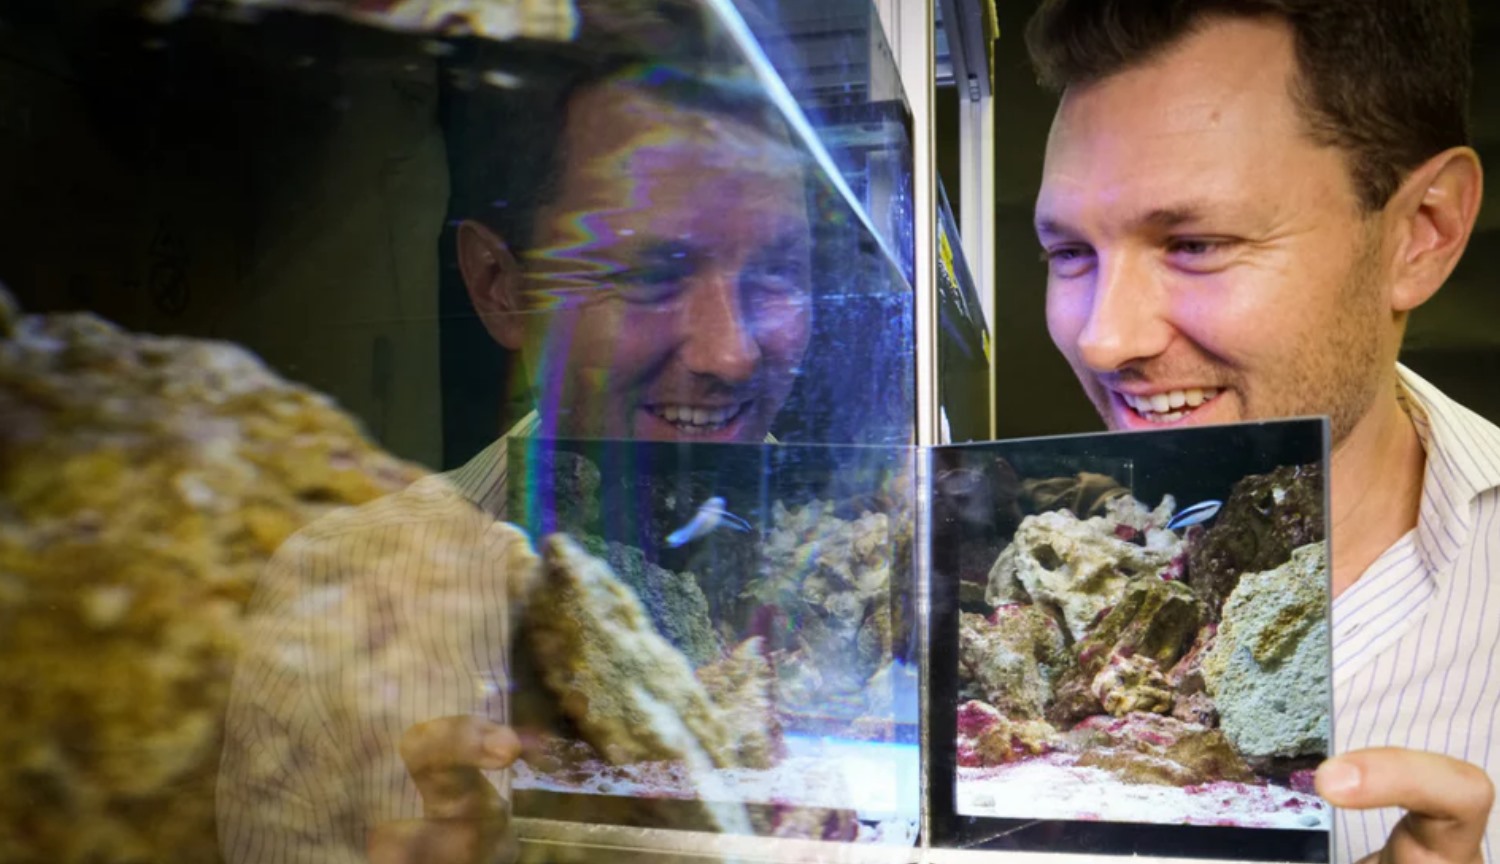 Eksperiment: at finde ud af, om fisken selv i spejlet?